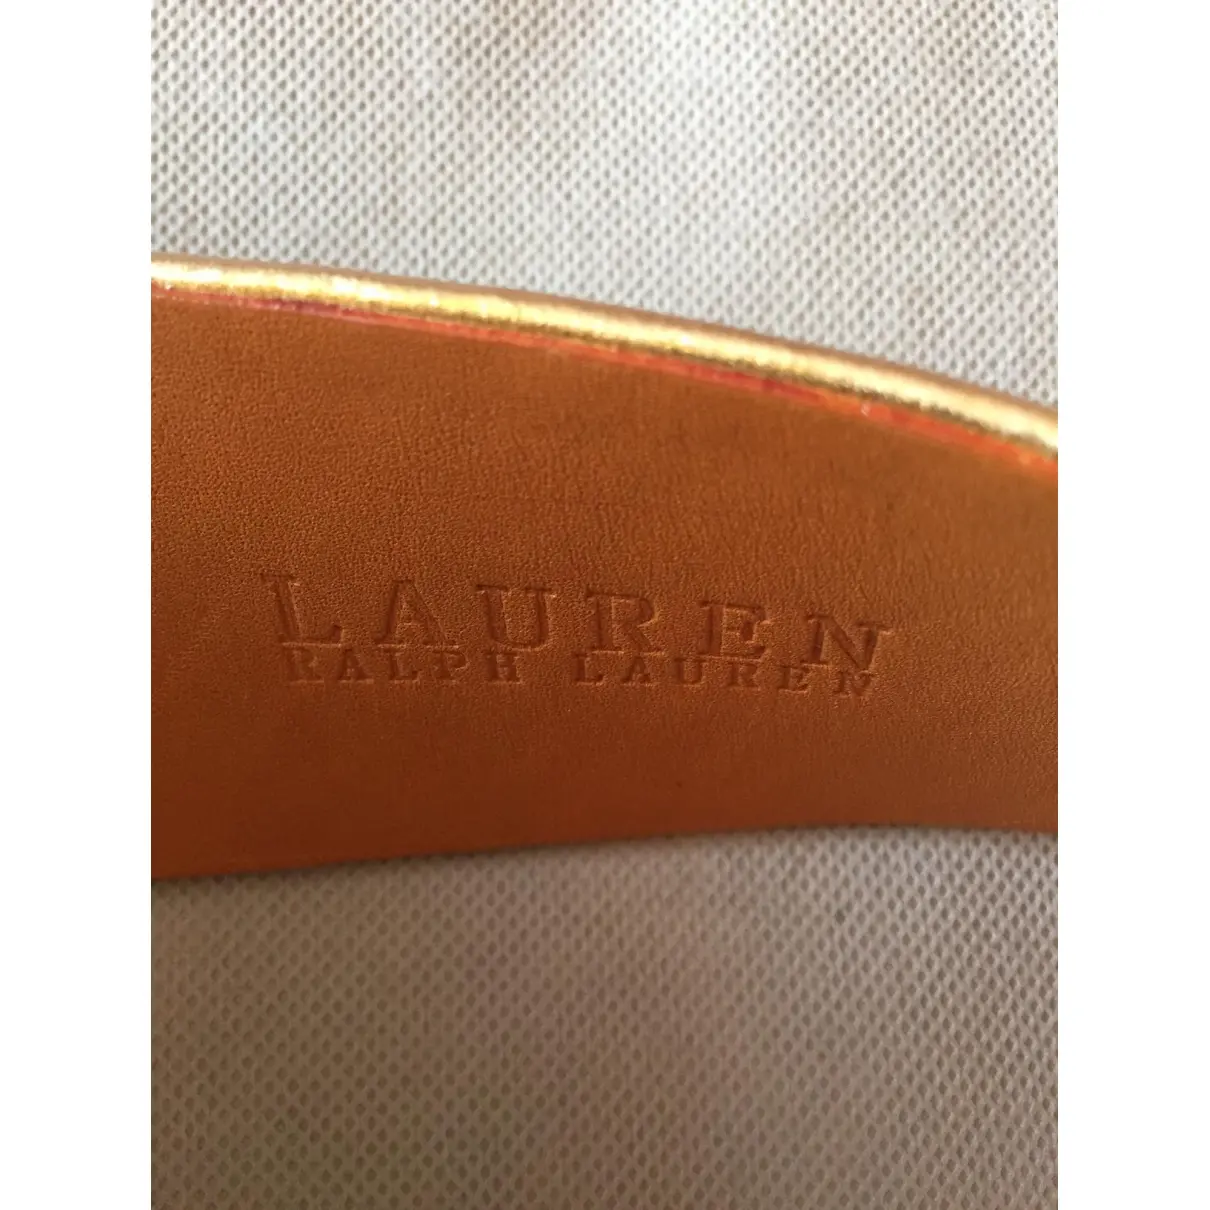 Leather belt Lauren Ralph Lauren